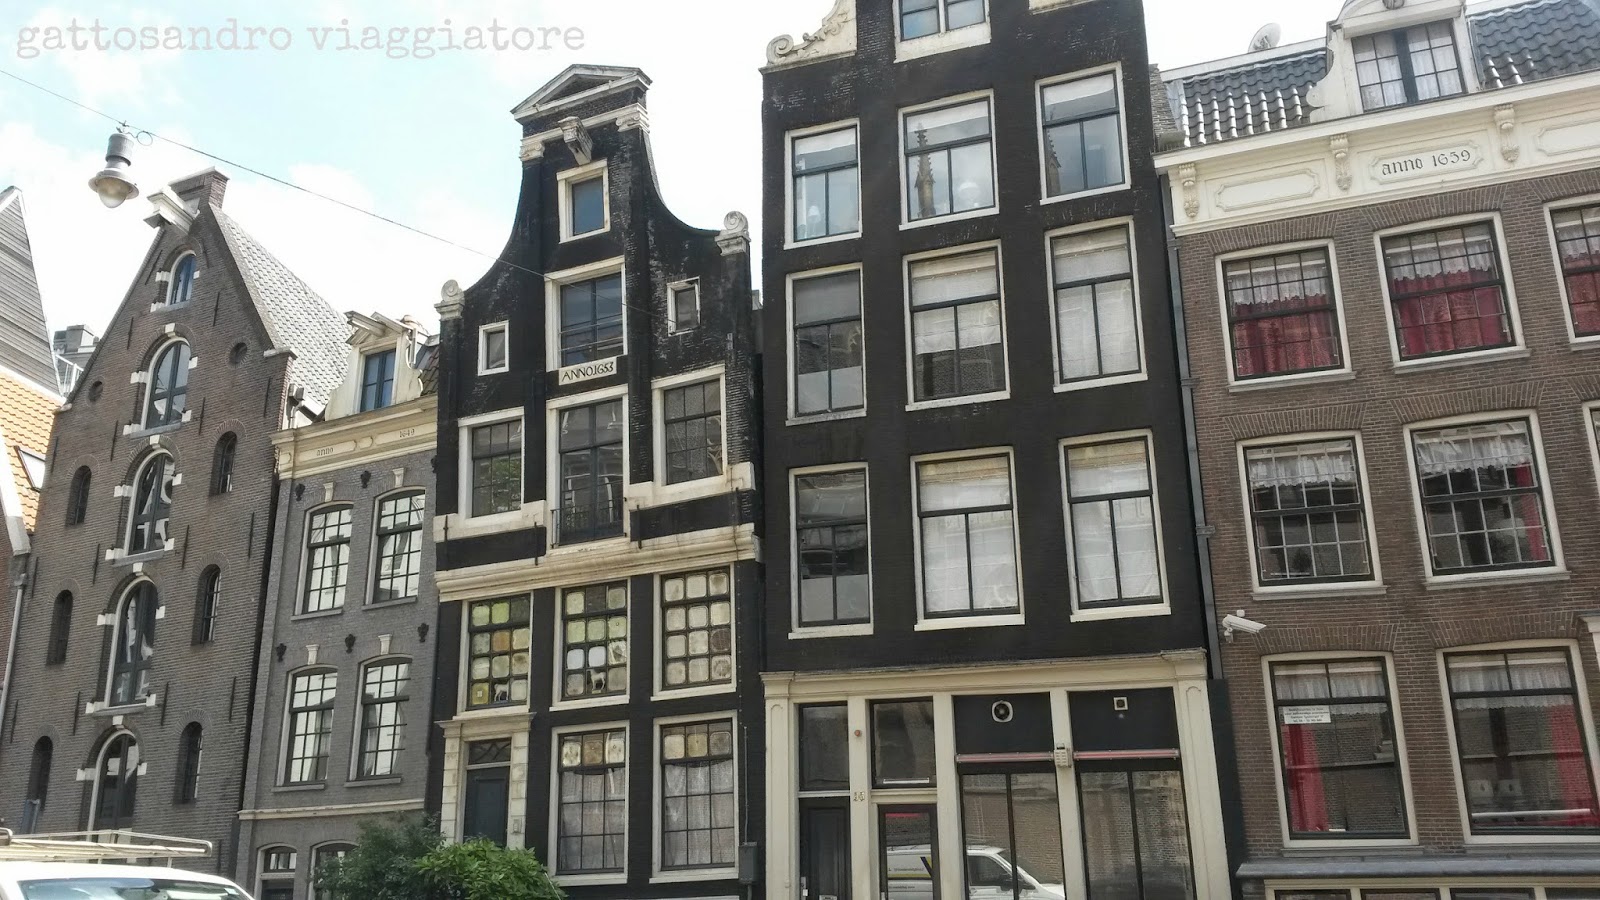 Le case di Amsterdam